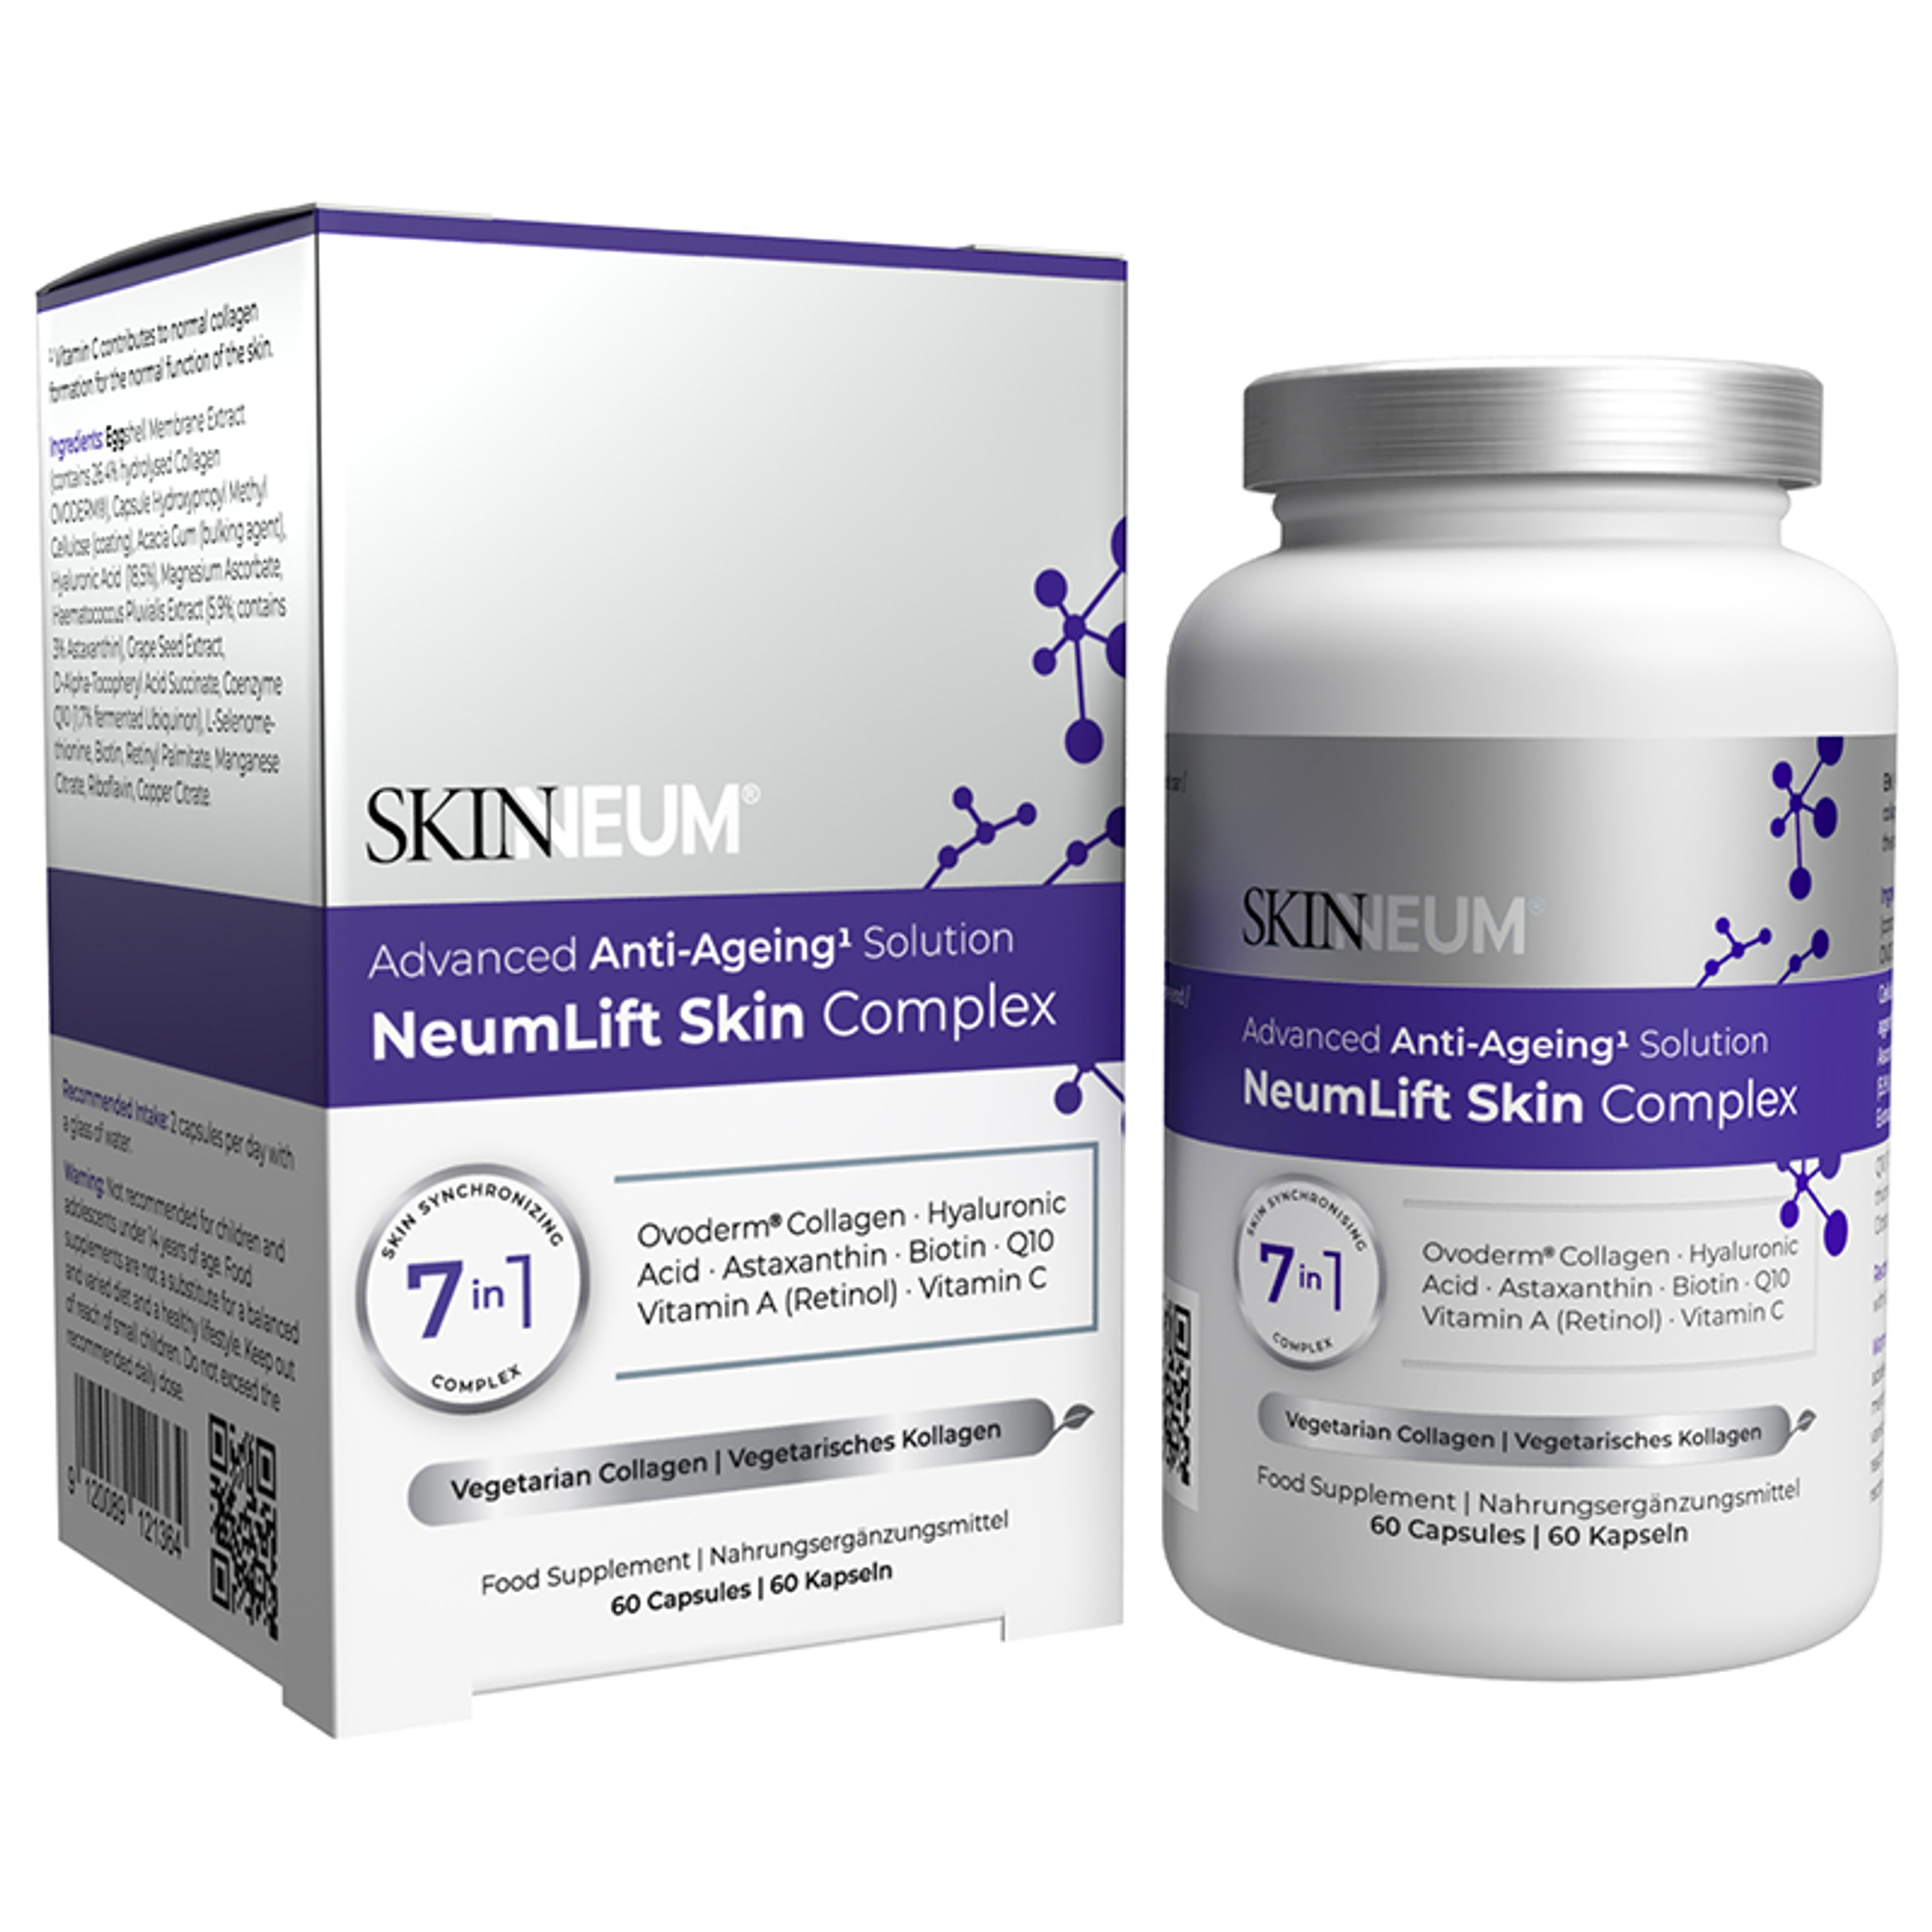 SKINNEUM NeumLift Skin Complex - 60 Capsules